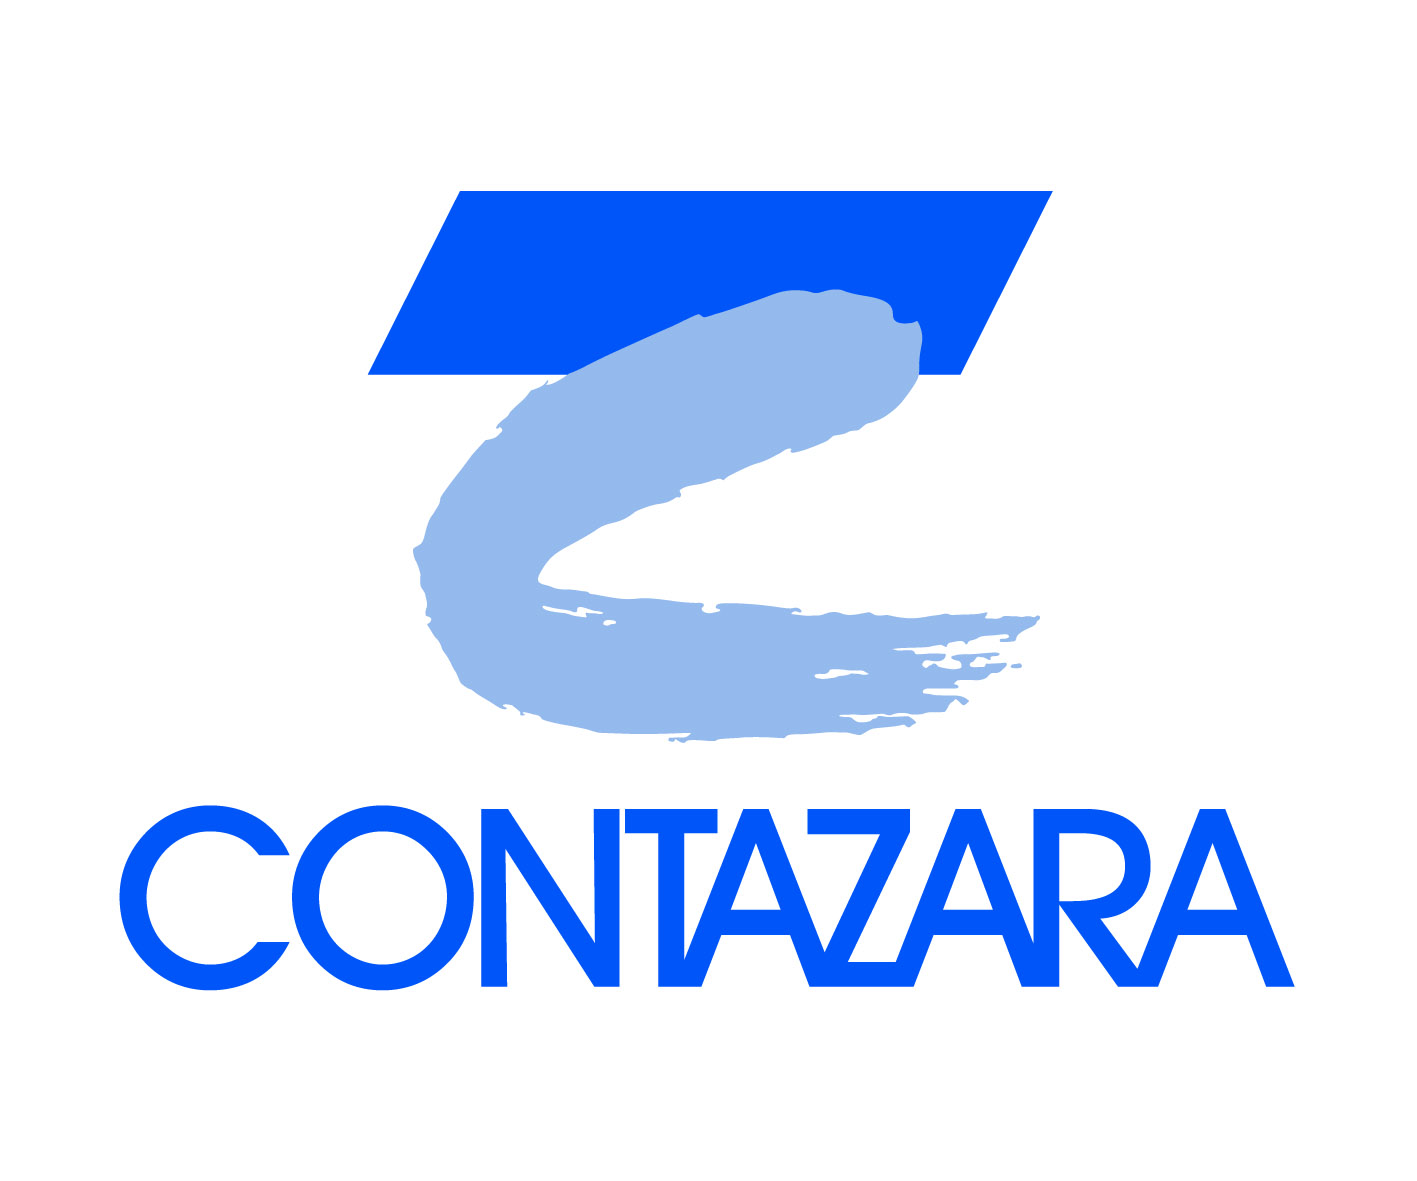 Contadores de Agua de Zaragoza, S.A. - CONTAZARA